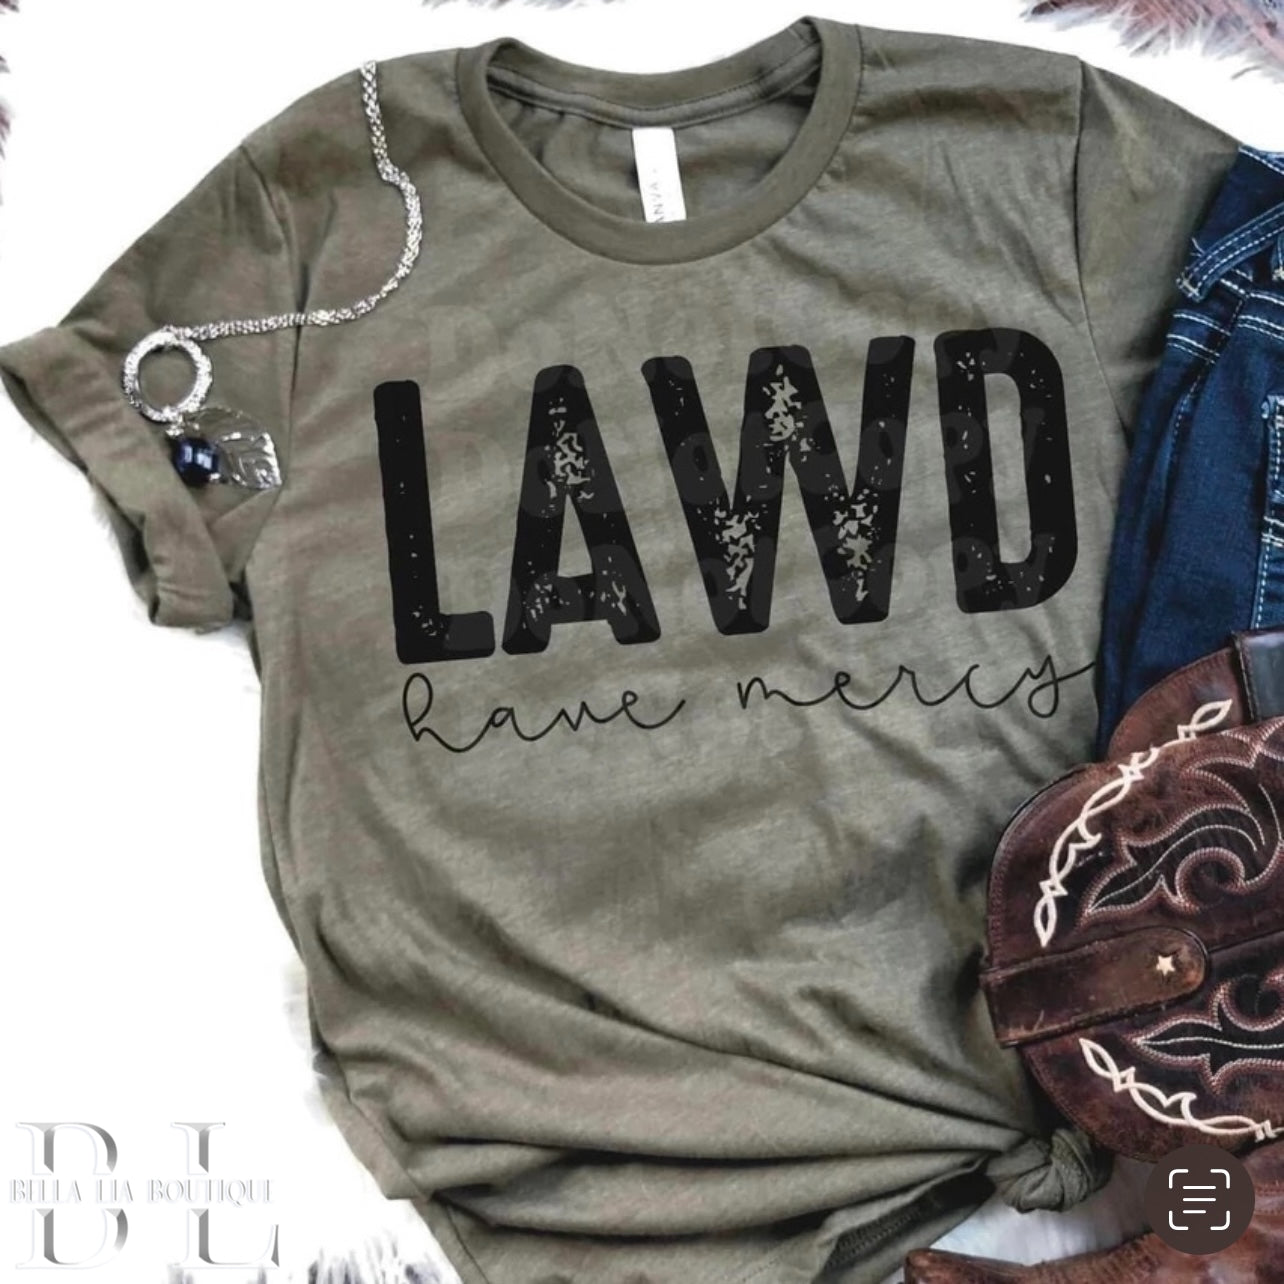 Lawd Have Mercy Graphic Tee or Sweatshirt - Bella Lia Boutique